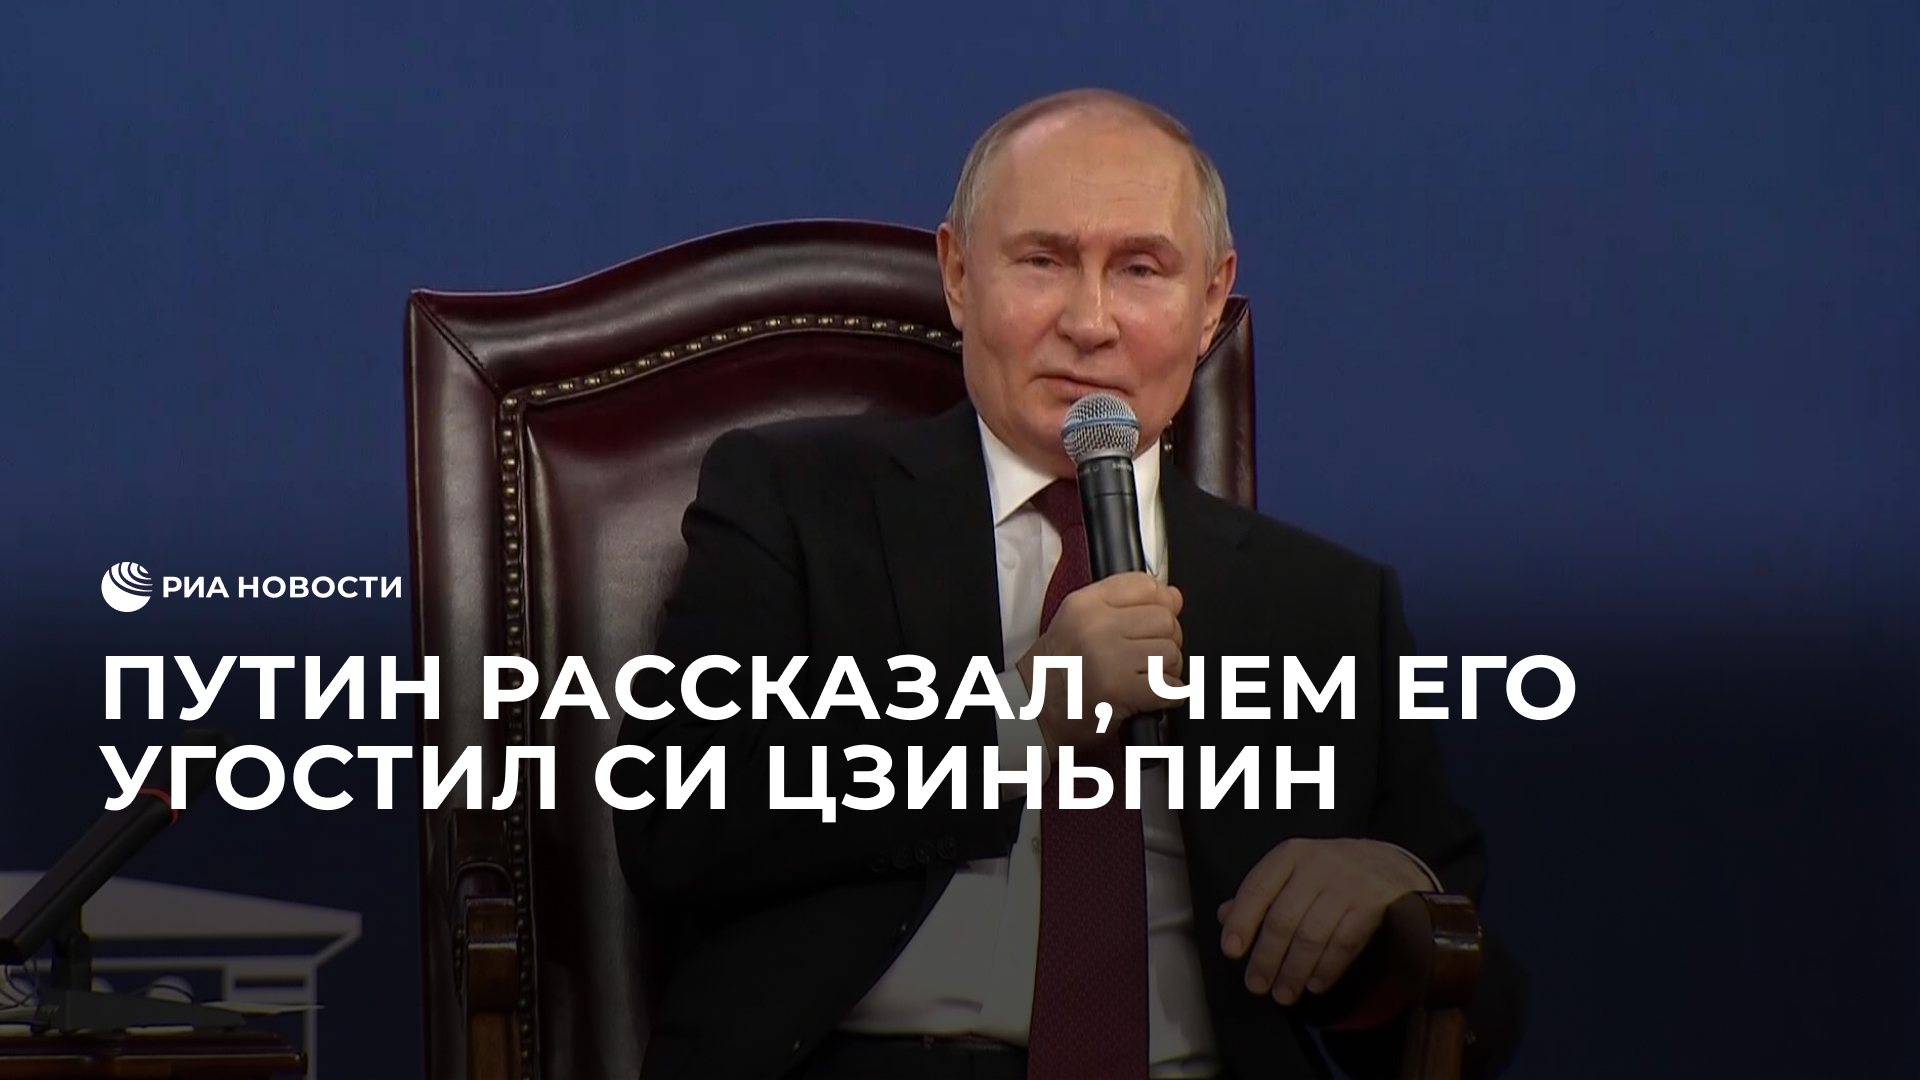 Путин рассказал, чем его угостил Си Цзиньпин